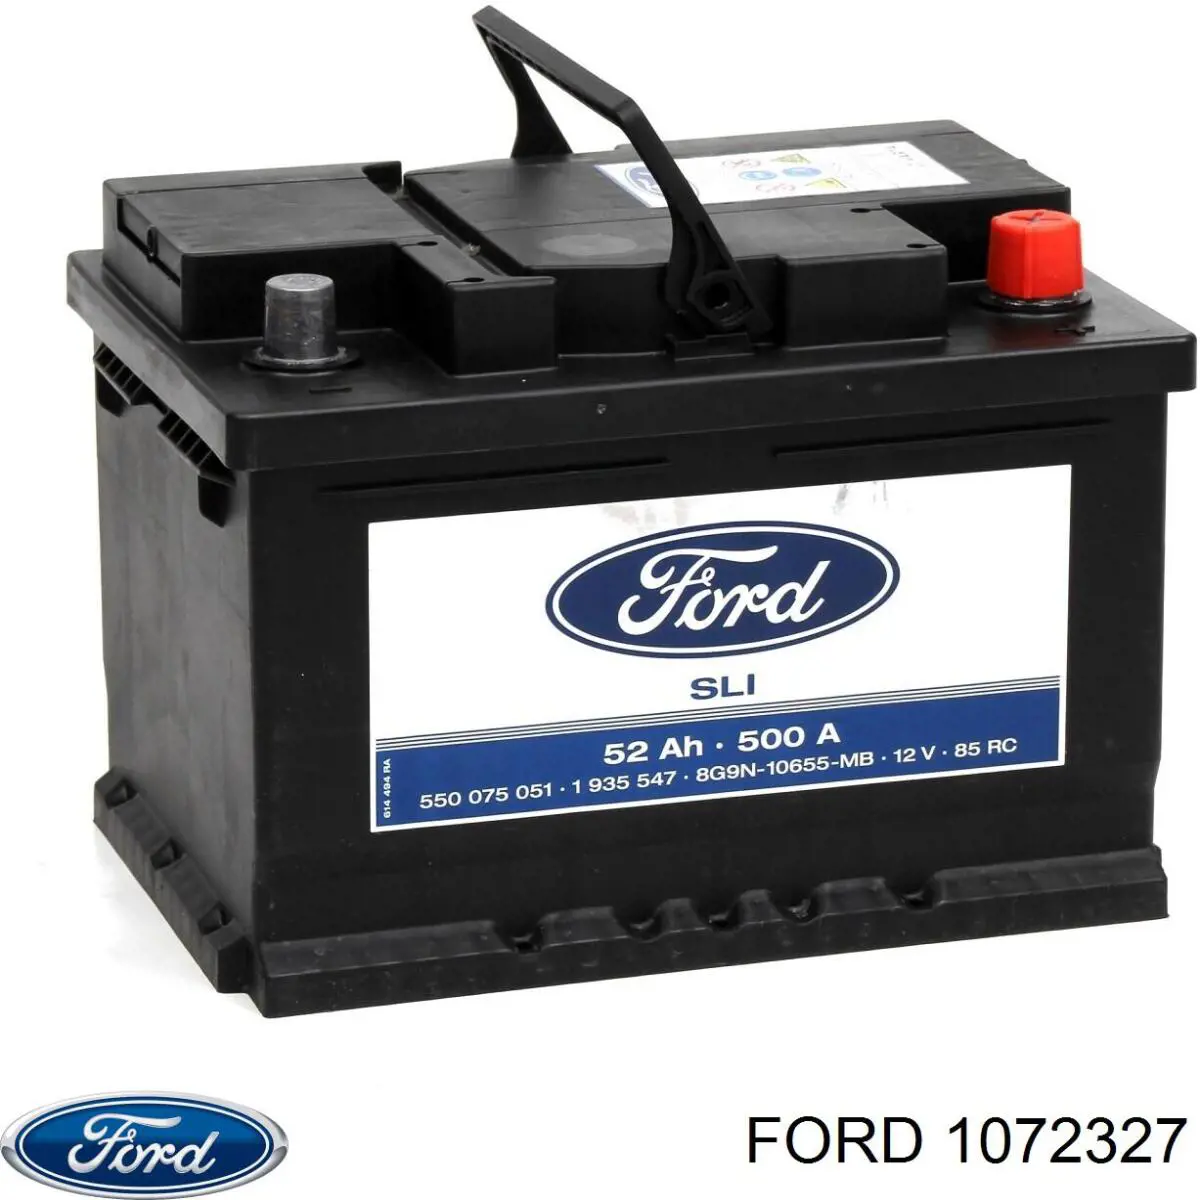 1706902 Ford bateria recarregável (pilha)